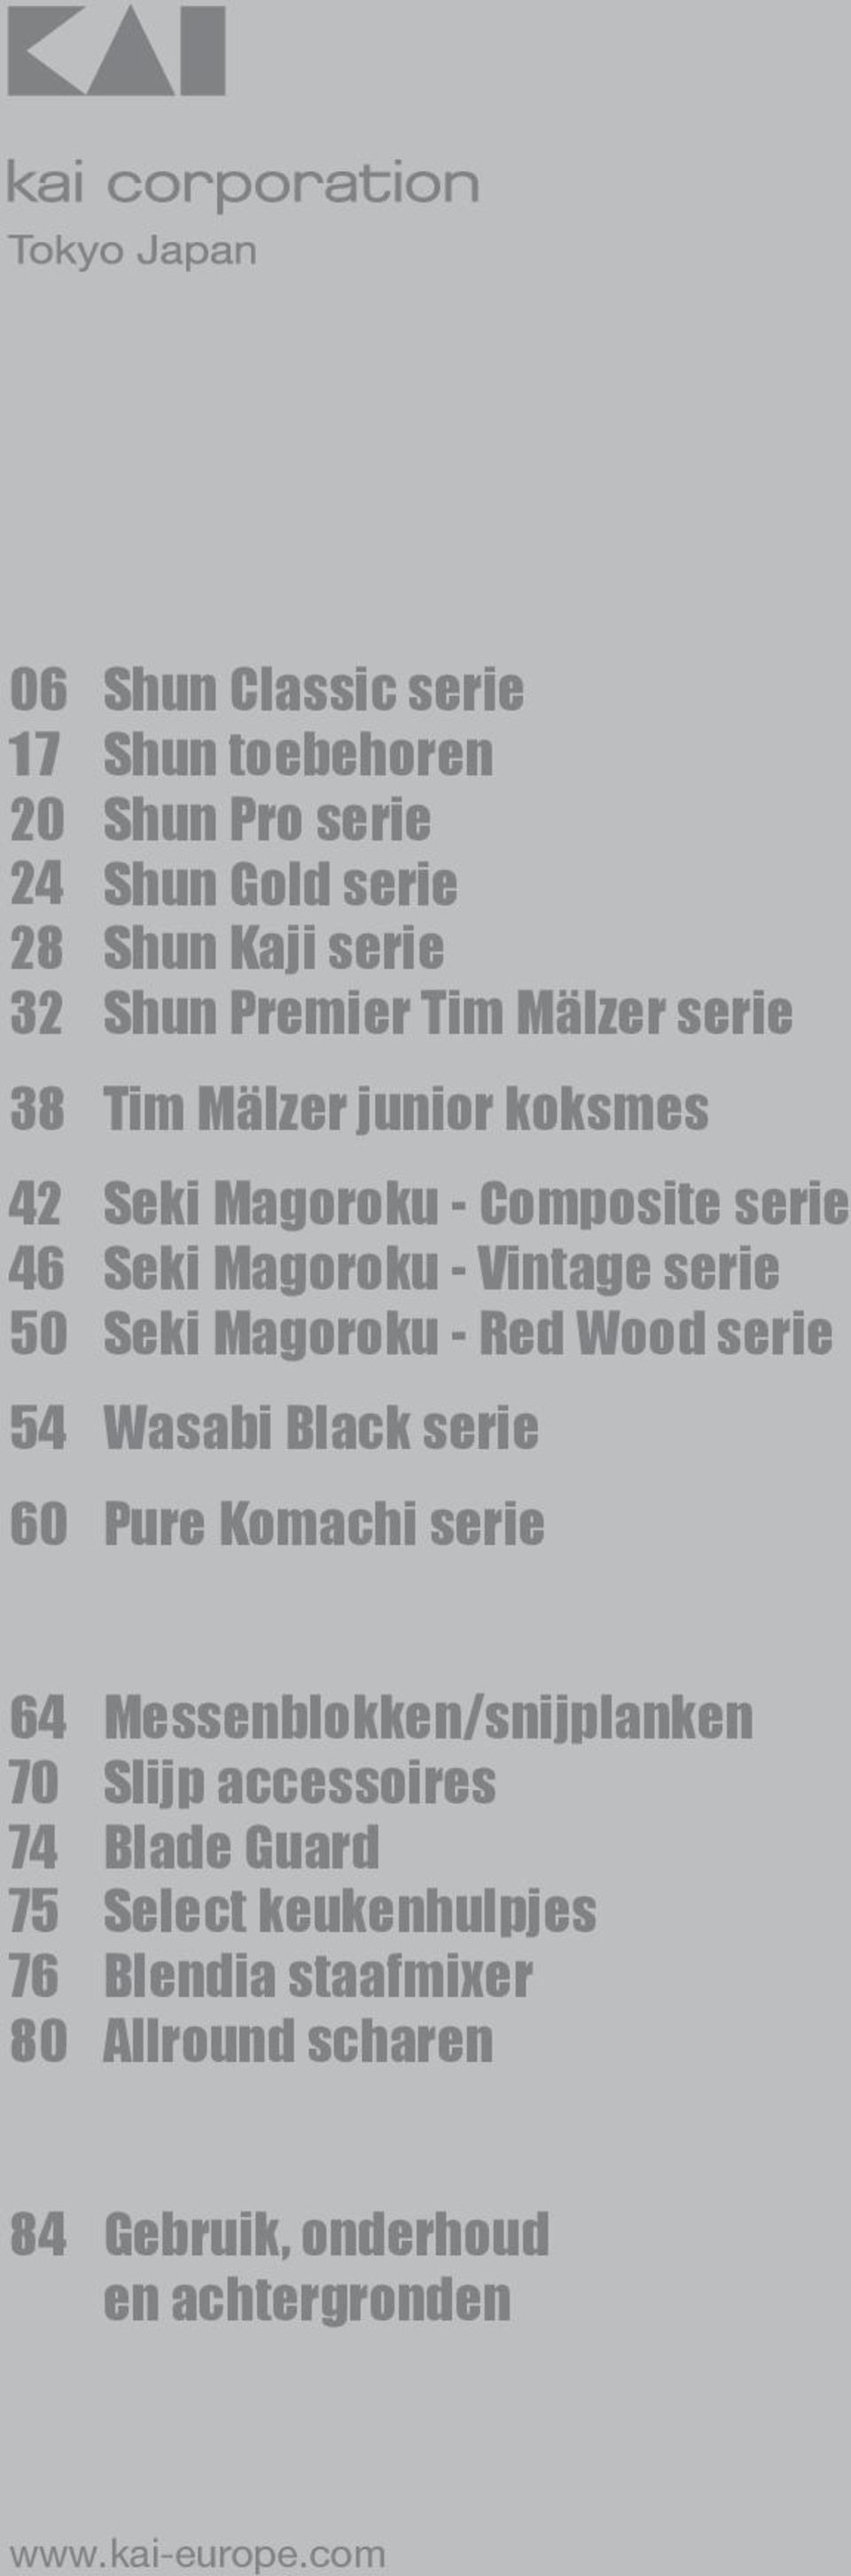 Magoroku - Red Wood serie 54 Wasabi Black serie 60 Pure Komachi serie 64 70 74 75 76 80 Messenblokken/snijplanken Slijp